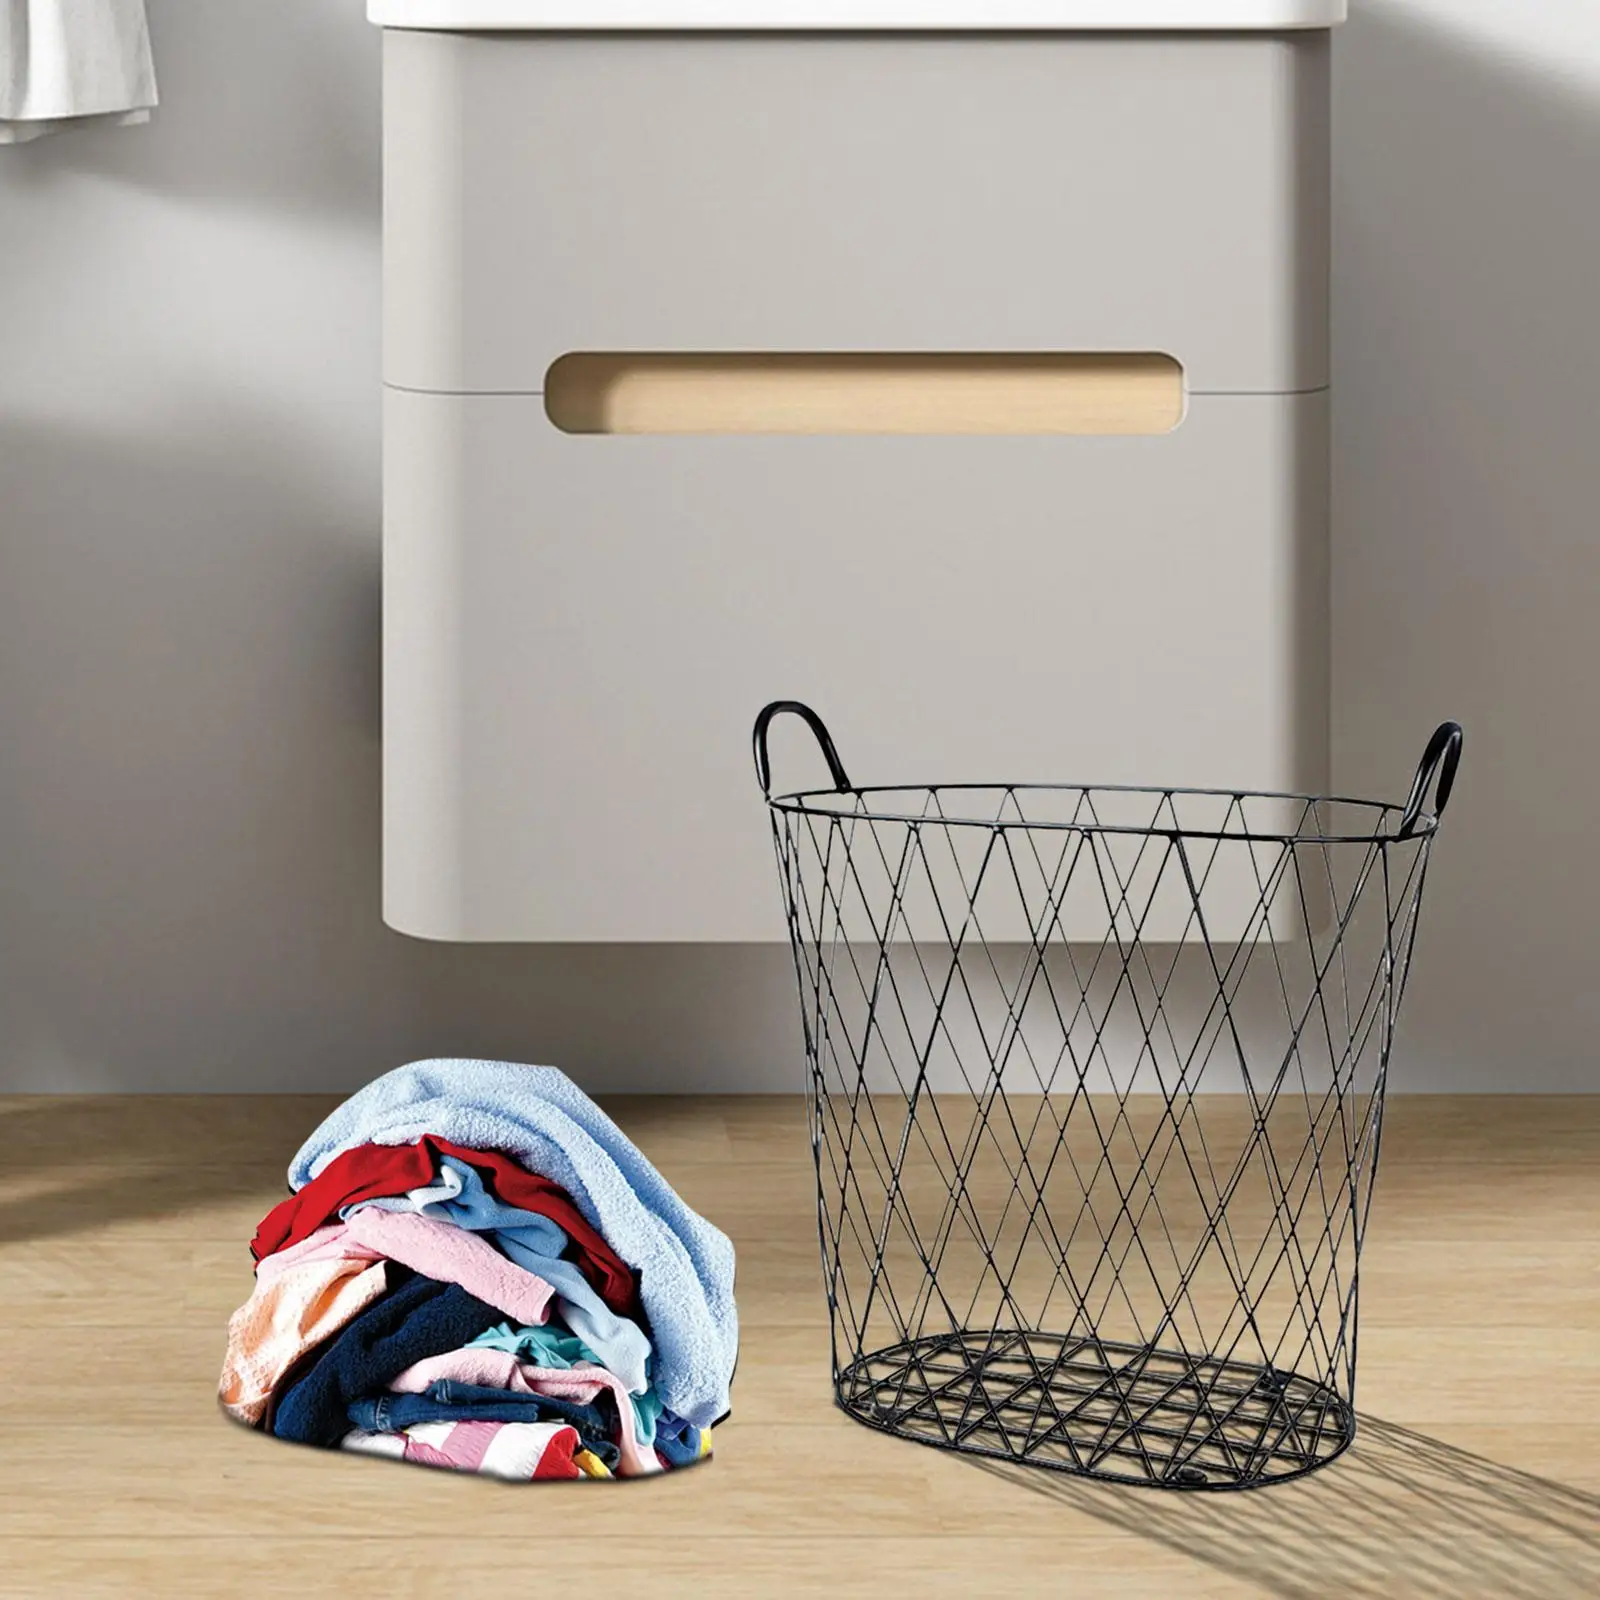 Iron Laundry Basket Sundries Organization Large Capacity Toy